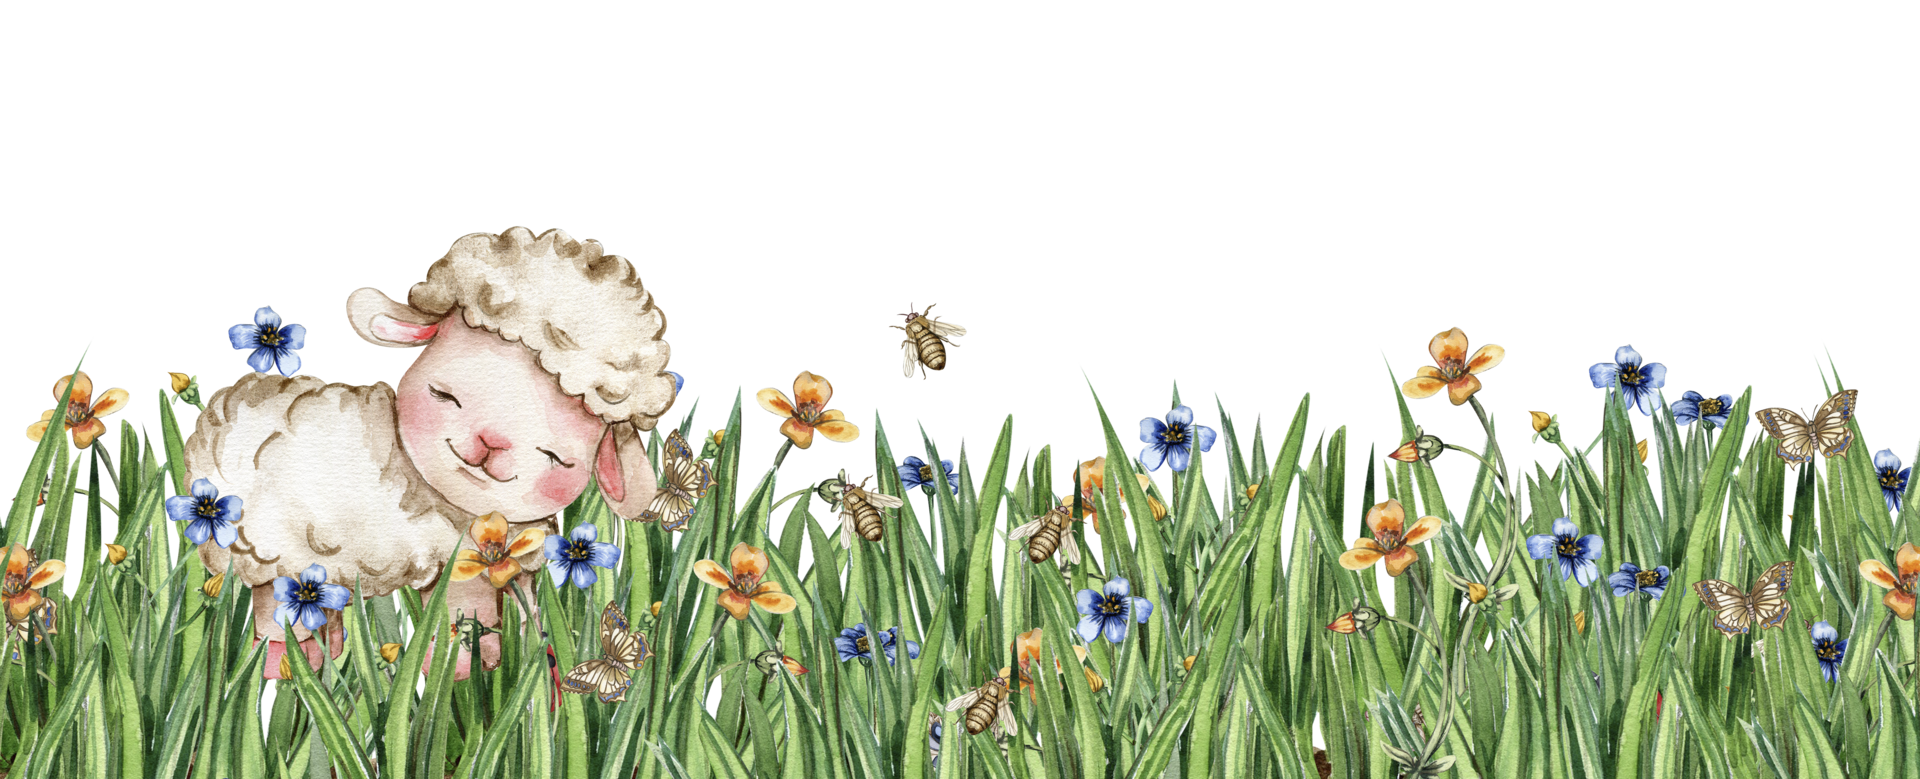 blanc duveteux mouton séance dans le champ de herbe avec fleurs et papillons. aquarelle main tiré illustration de ferme bébé animal . parfait pour salutations carte, affiche, en tissu modèle. png